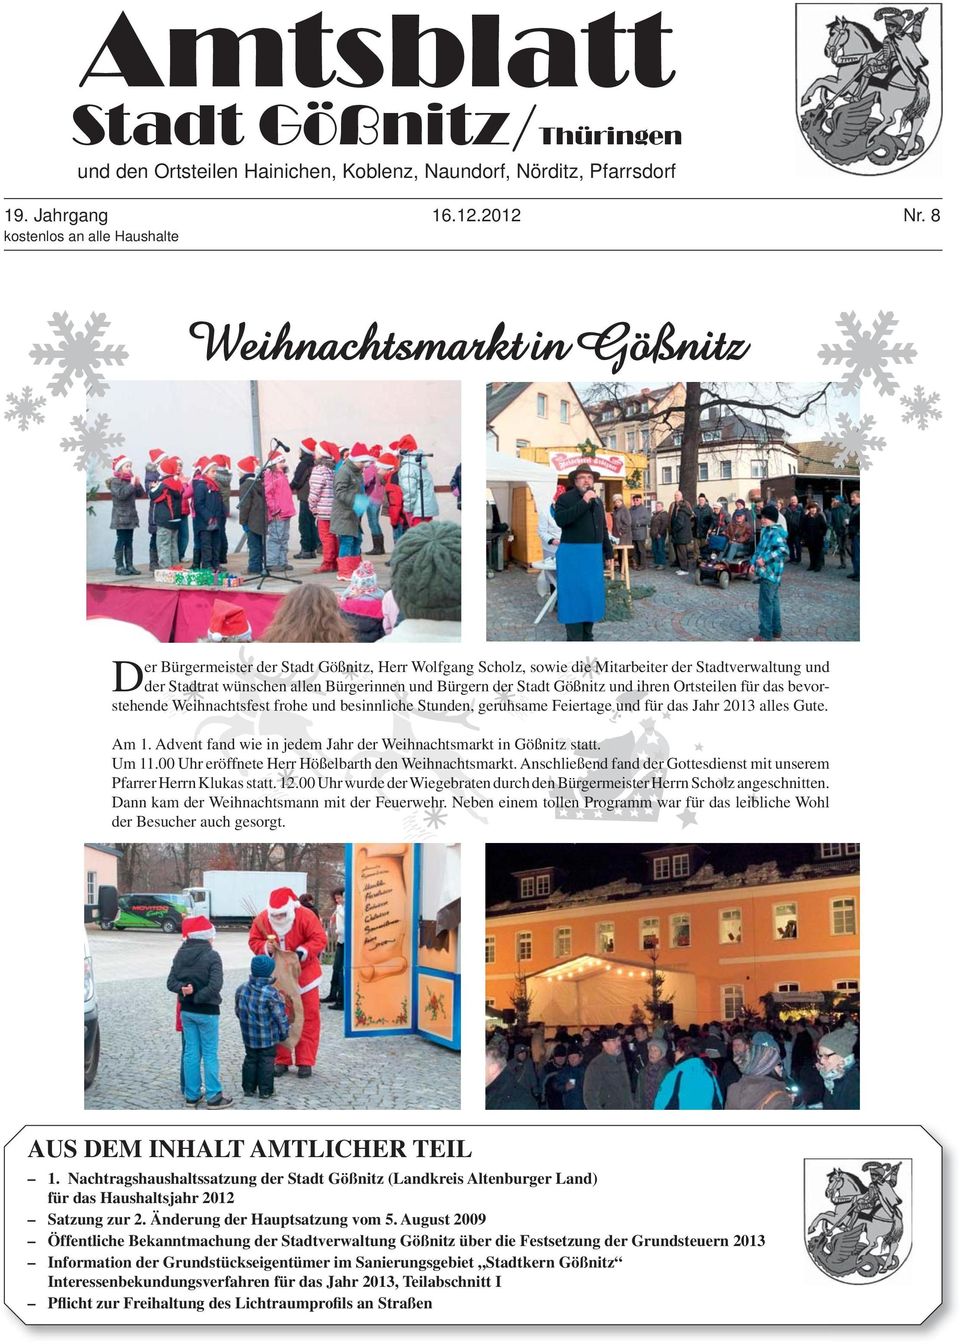 Bürgerinnen und Bürgern der Stadt Gößnitz und ihren Ortsteilen für das bevorstehende Weihnachtsfest frohe und besinnliche Stunden, geruhsame Feiertage und für das Jahr 2013 alles Gute. Am 1.